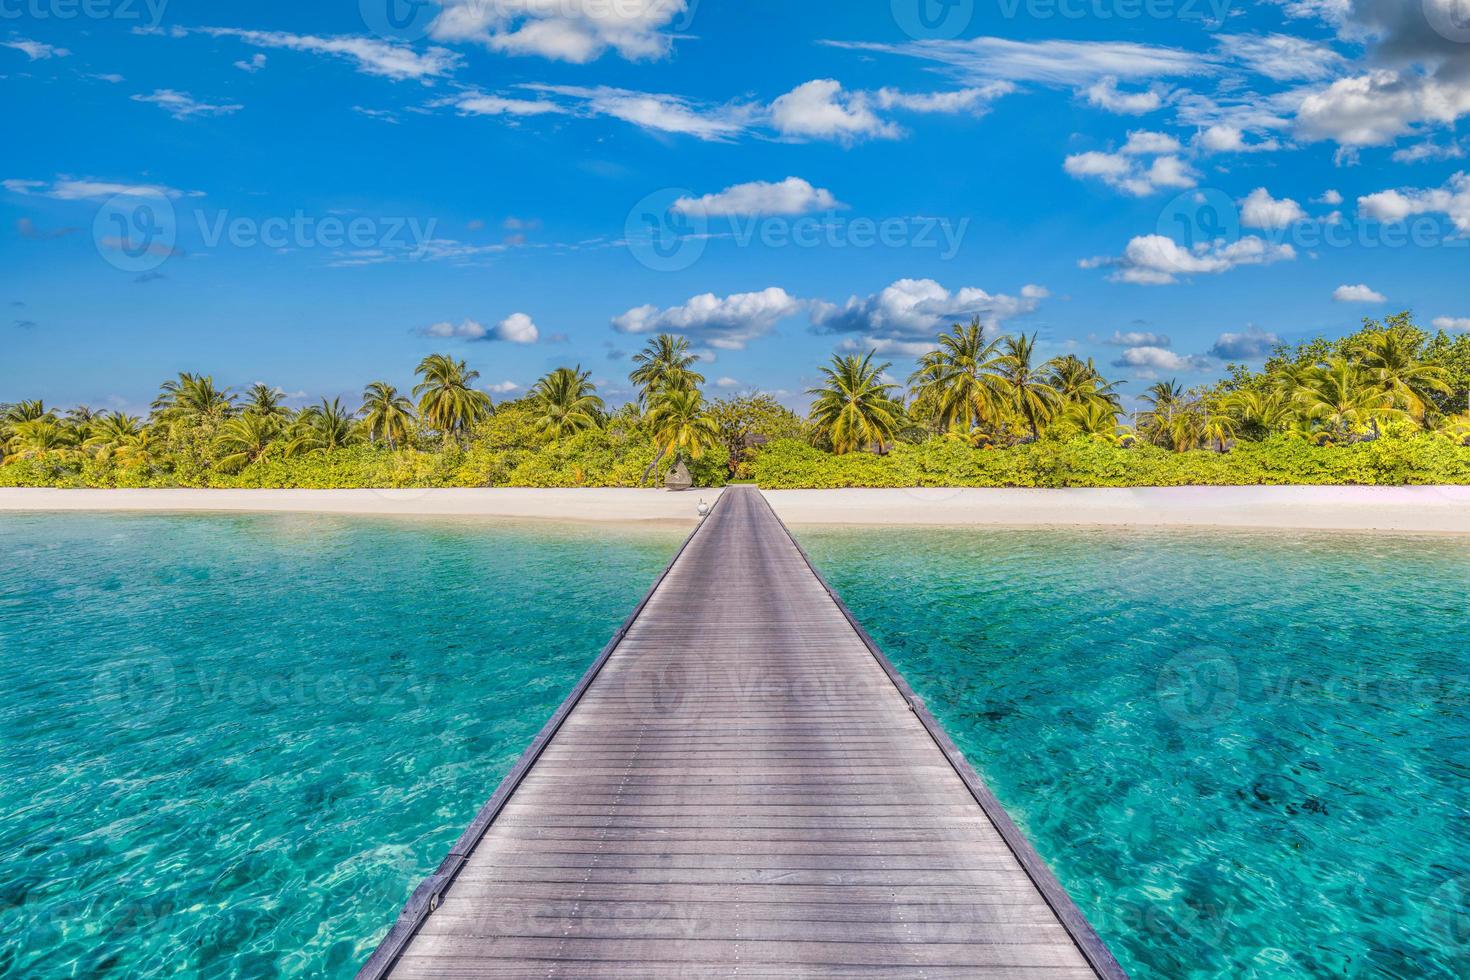 asombroso panorama en maldivas. villas de lujo resort paisaje marino con palmeras, arena blanca y cielo azul. hermoso paisaje de verano. Increíble fondo de playa para vacaciones. concepto de isla paradisíaca foto